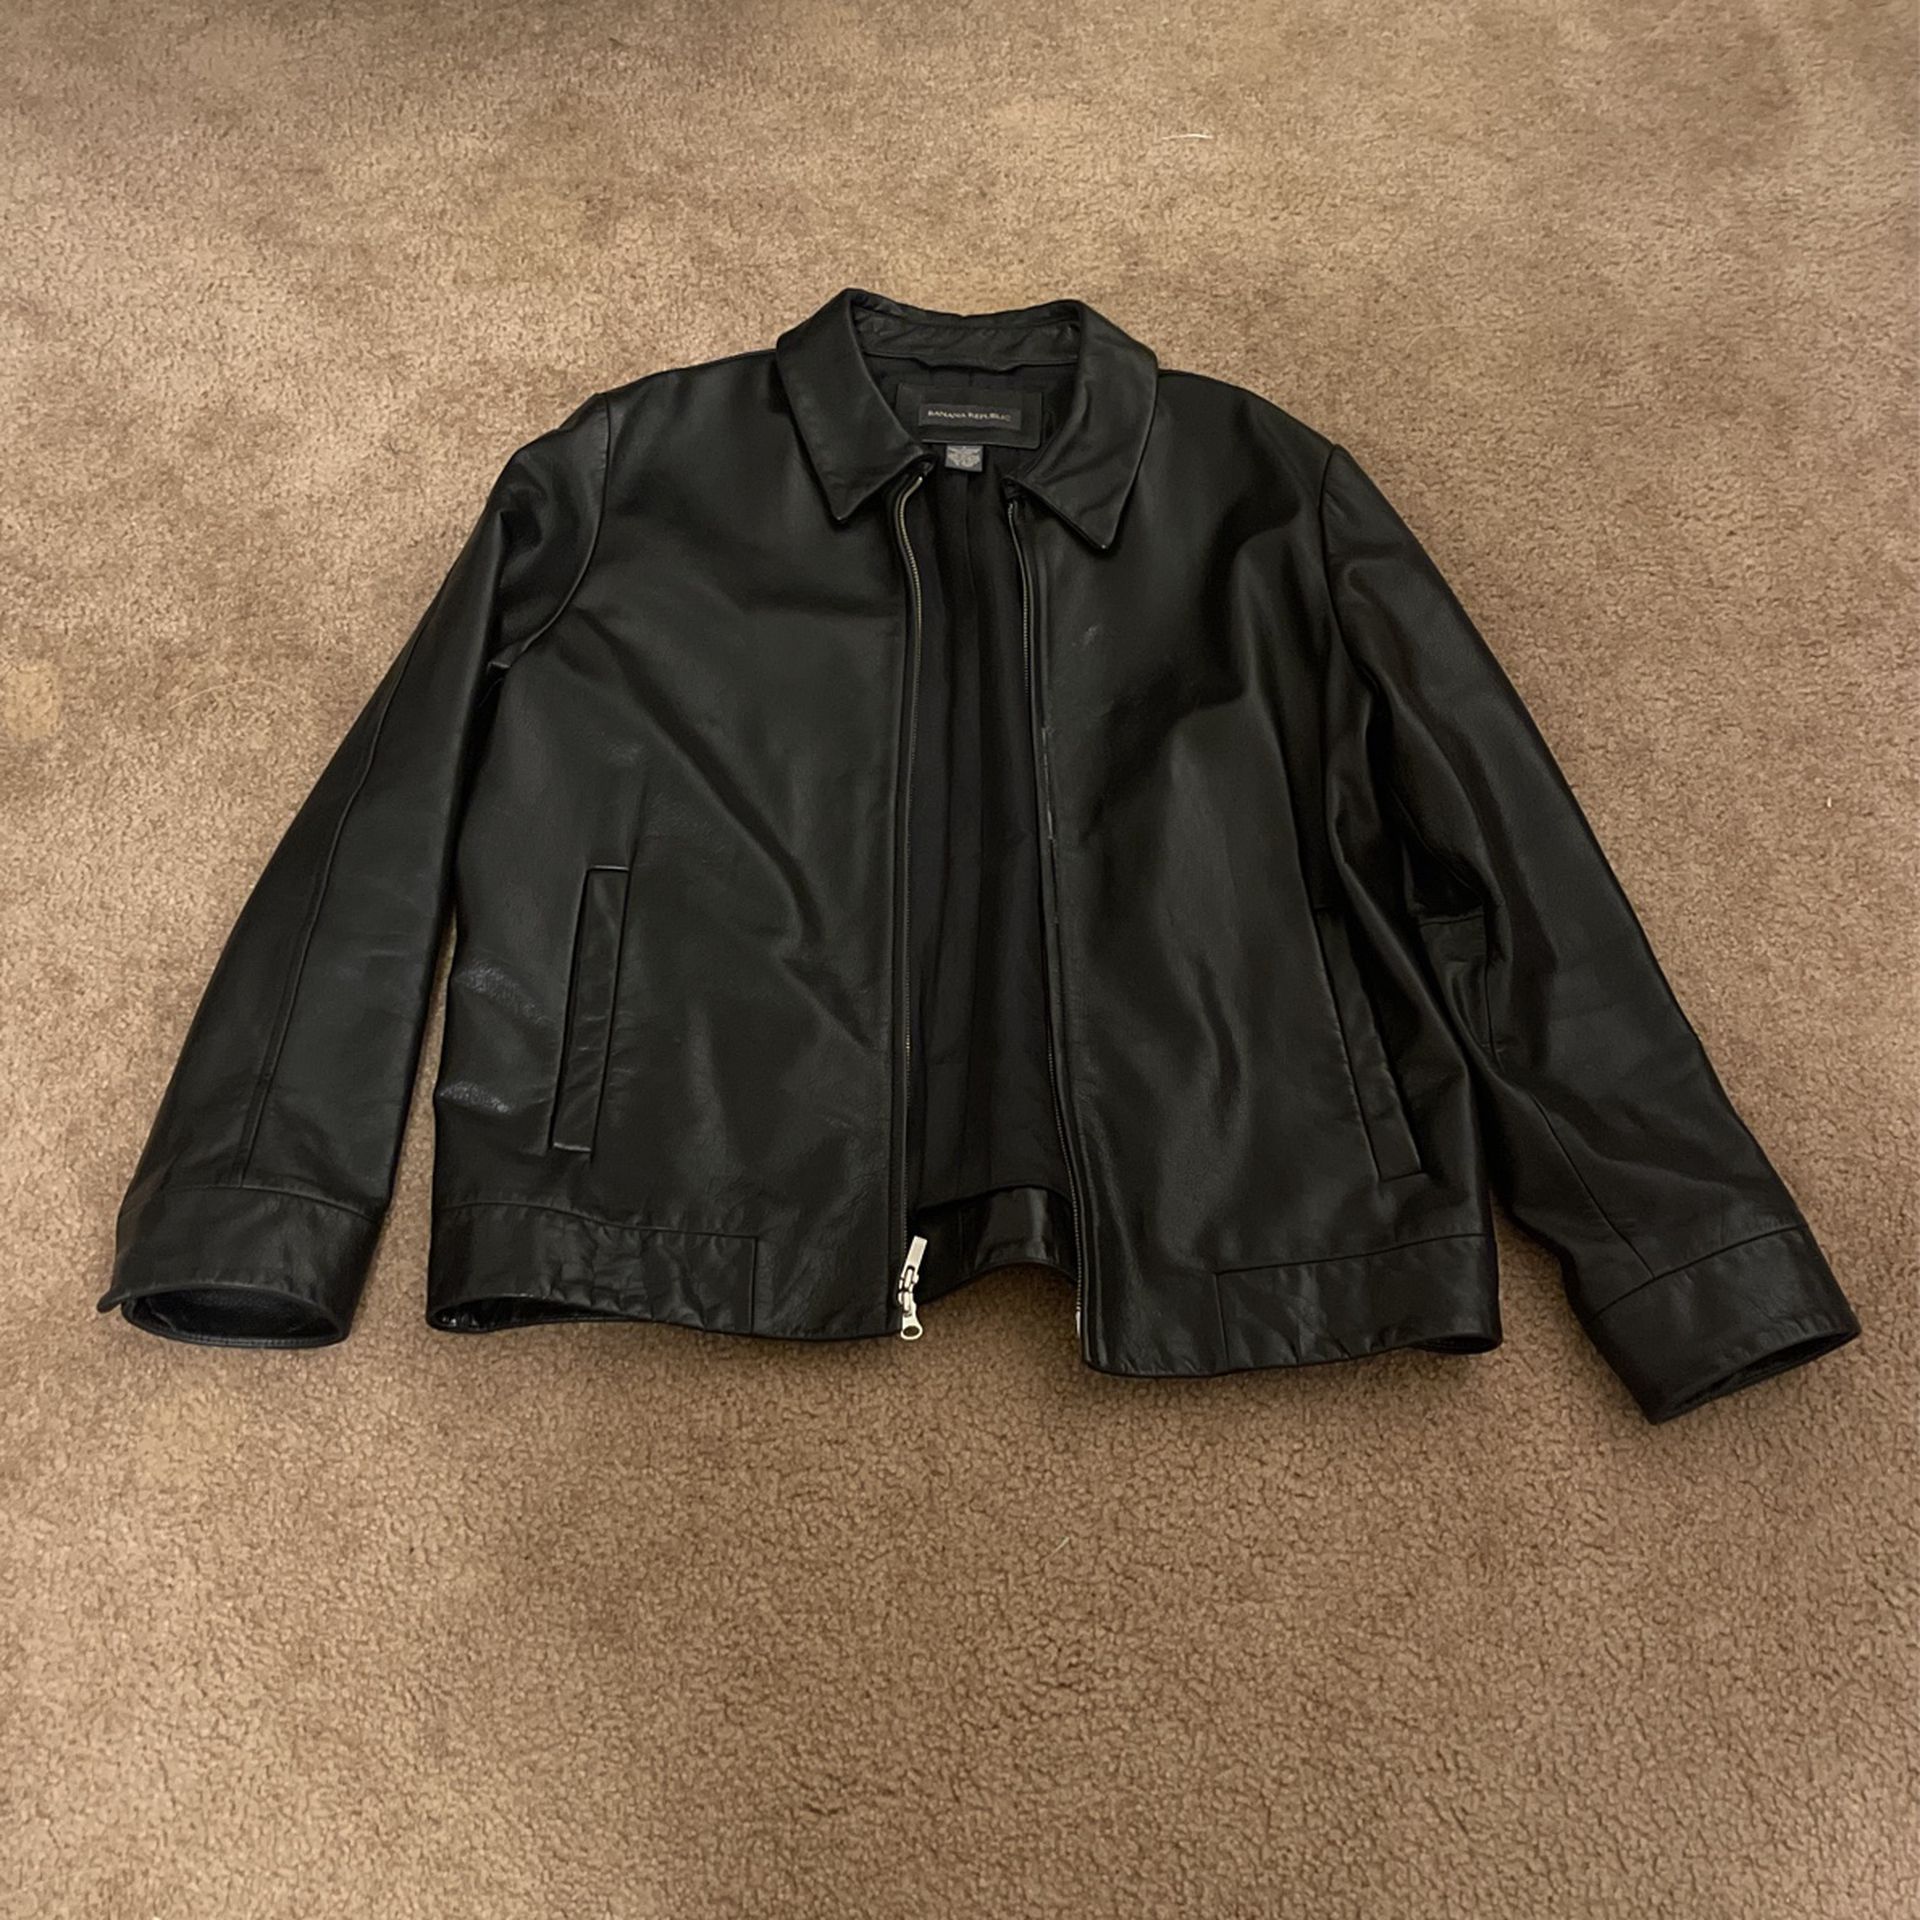 Banana Republic Leather Jacket (black)